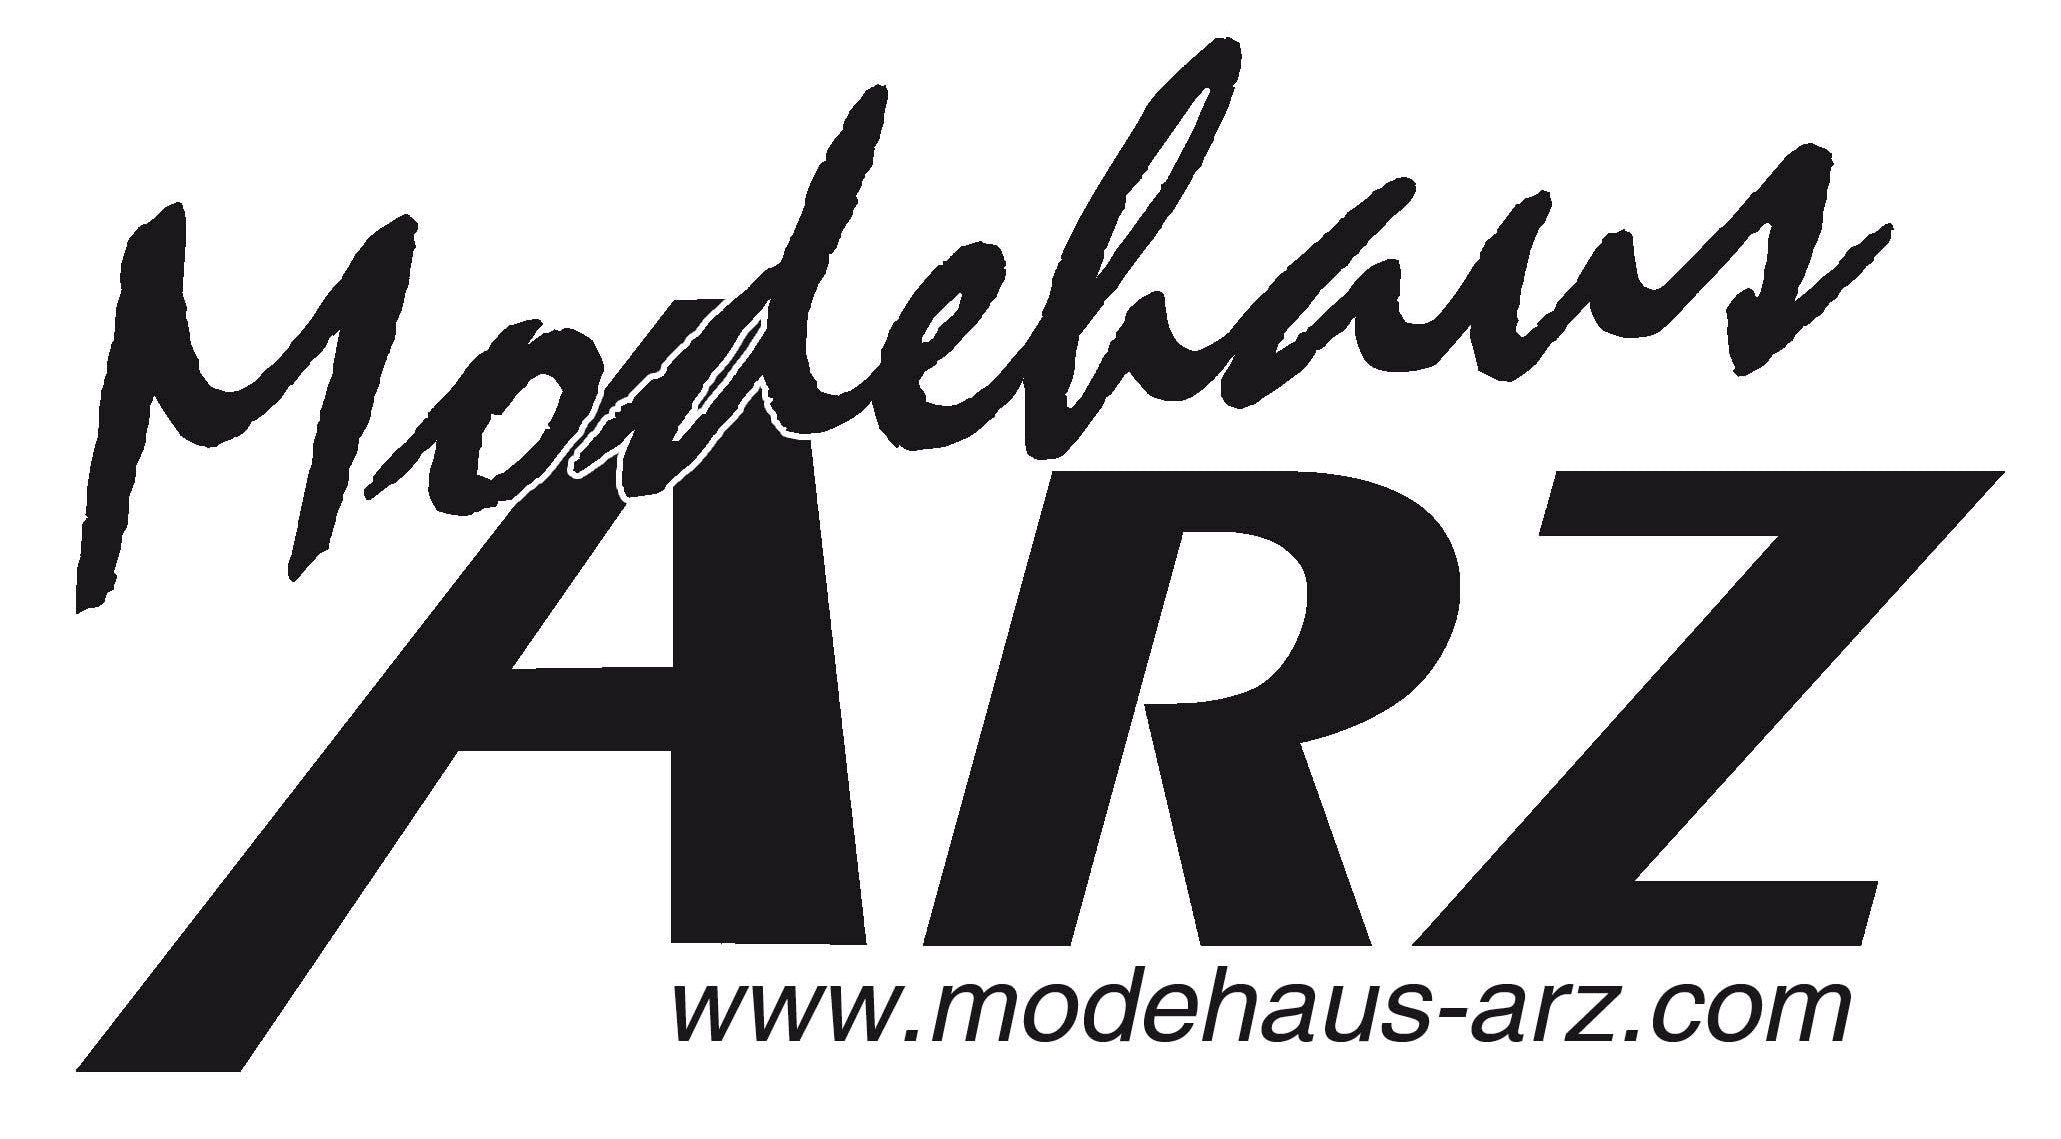 (c) Modehaus-arz.com